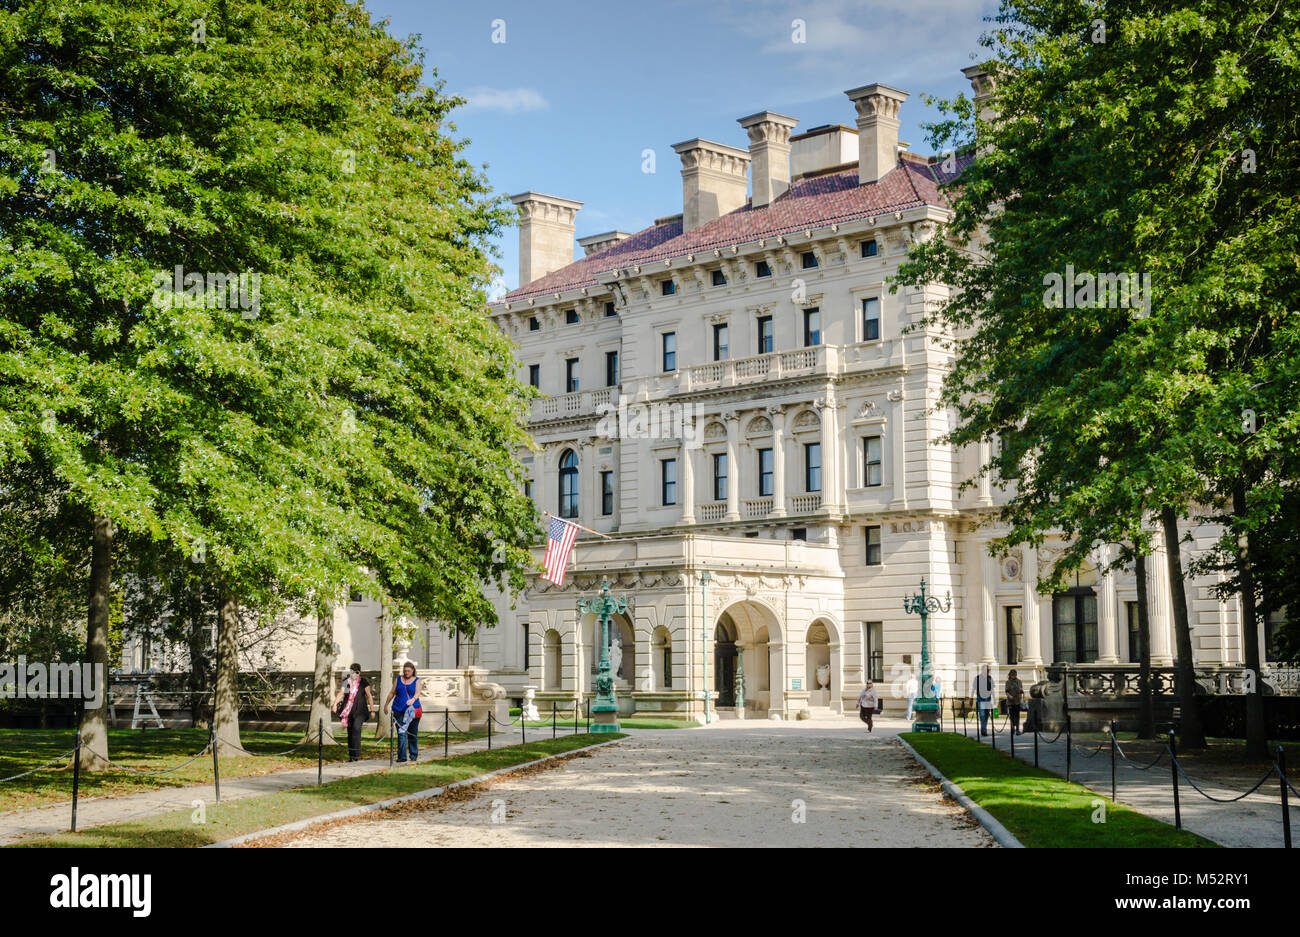 Das Breakers wurde als Newport, Rhode Island, Sommer zu Hause des Cornelius Vanderbilt, Mitglied der wohlhabenden United States Vanderbilt Familie gebaut. Stockfoto